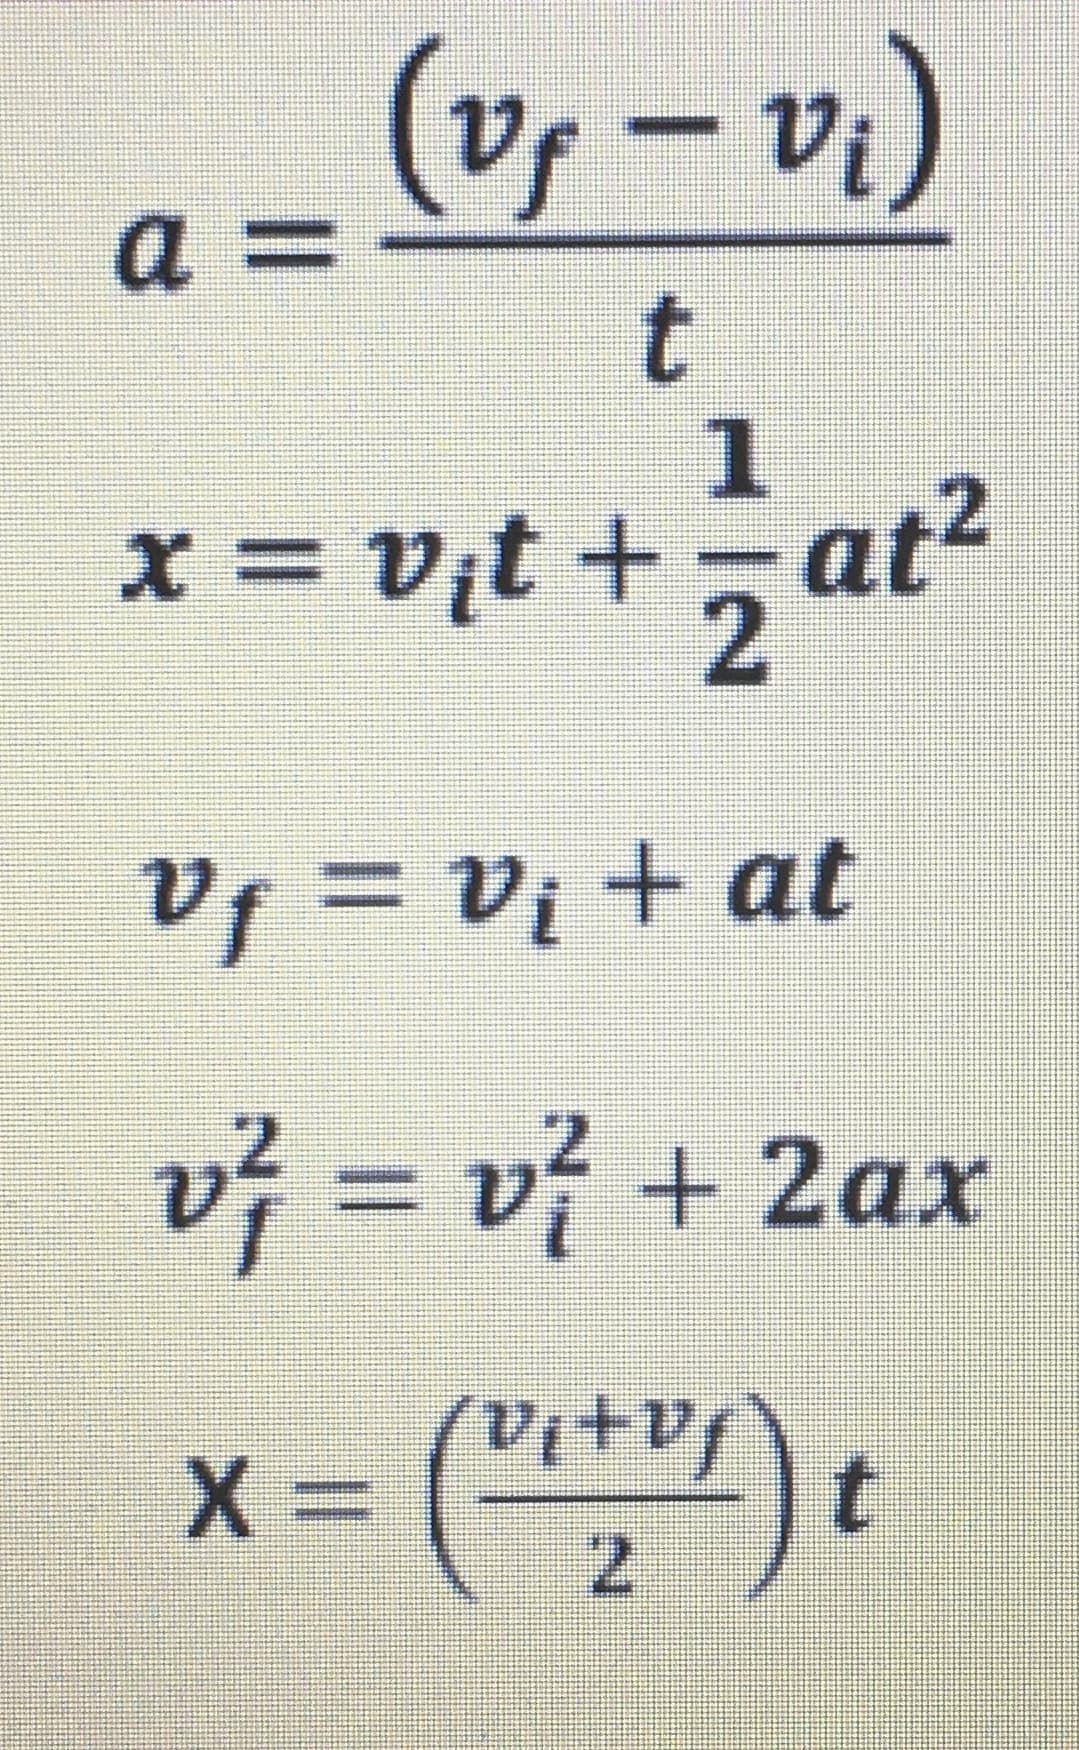 a =
(v₁ - vi)
t
1
x=v₁t+=at²
2
Vƒ = V₁ + at
v² = v} + 2ax
X=
Ja+la
7.
t